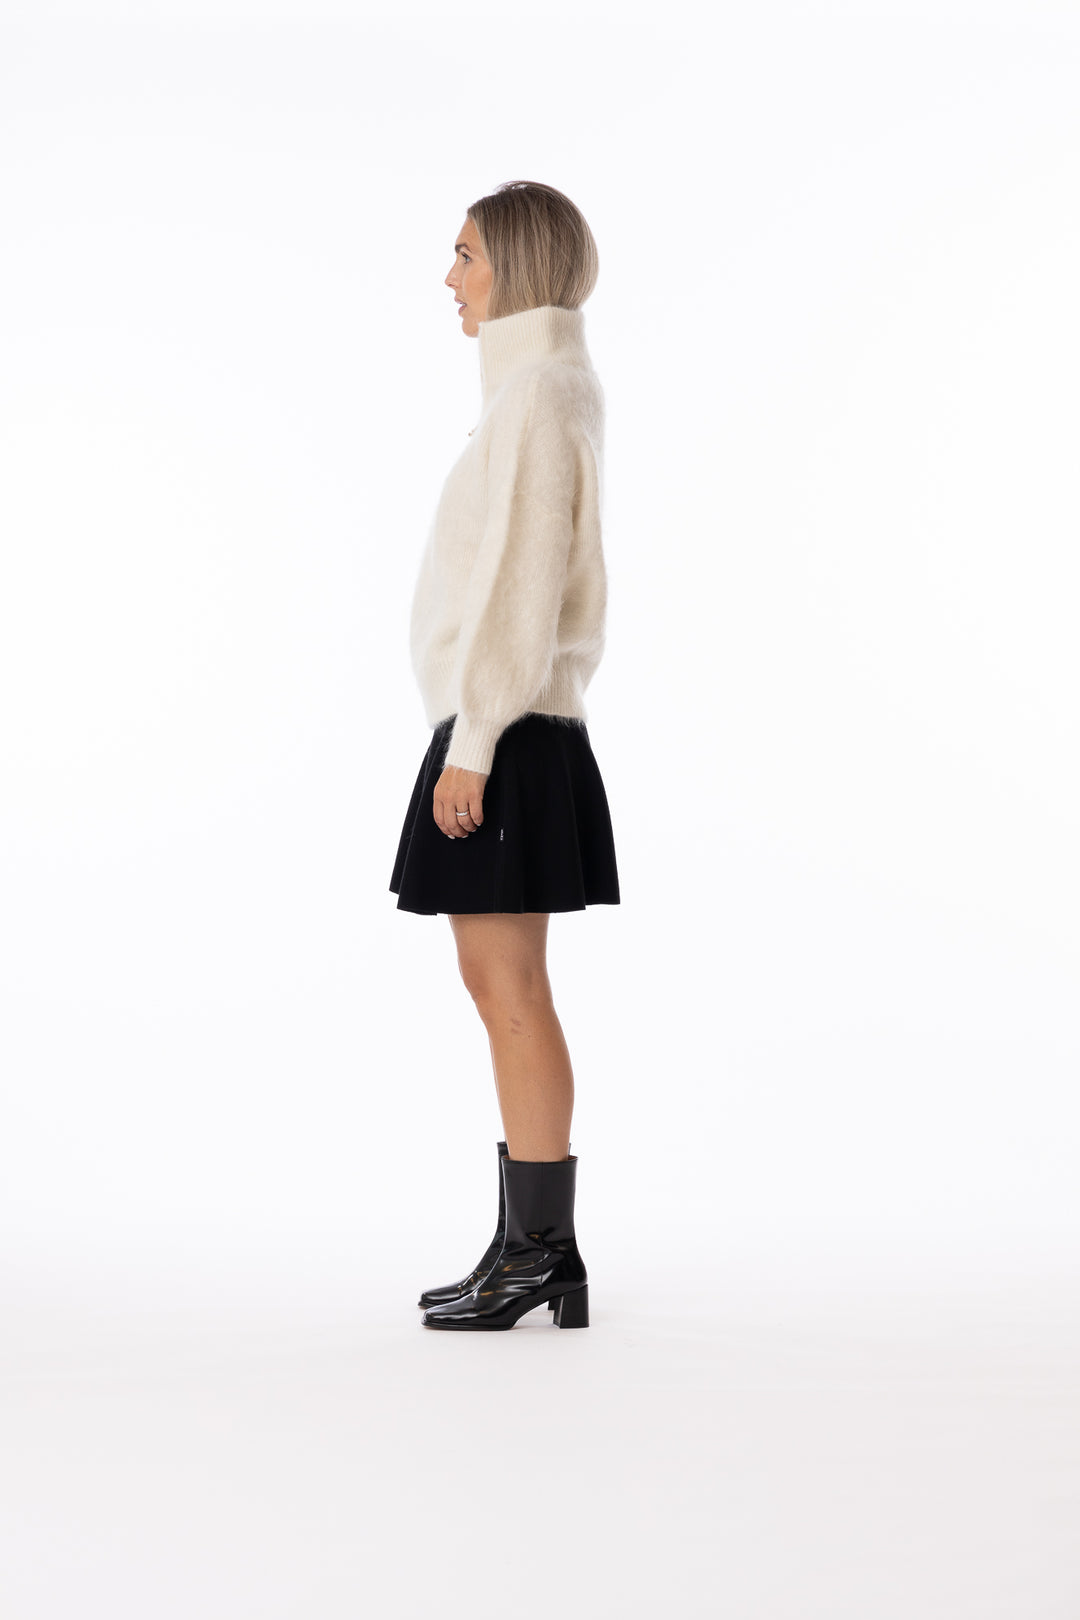 Li Chunky Sweater- White-Genser-Bogartstore